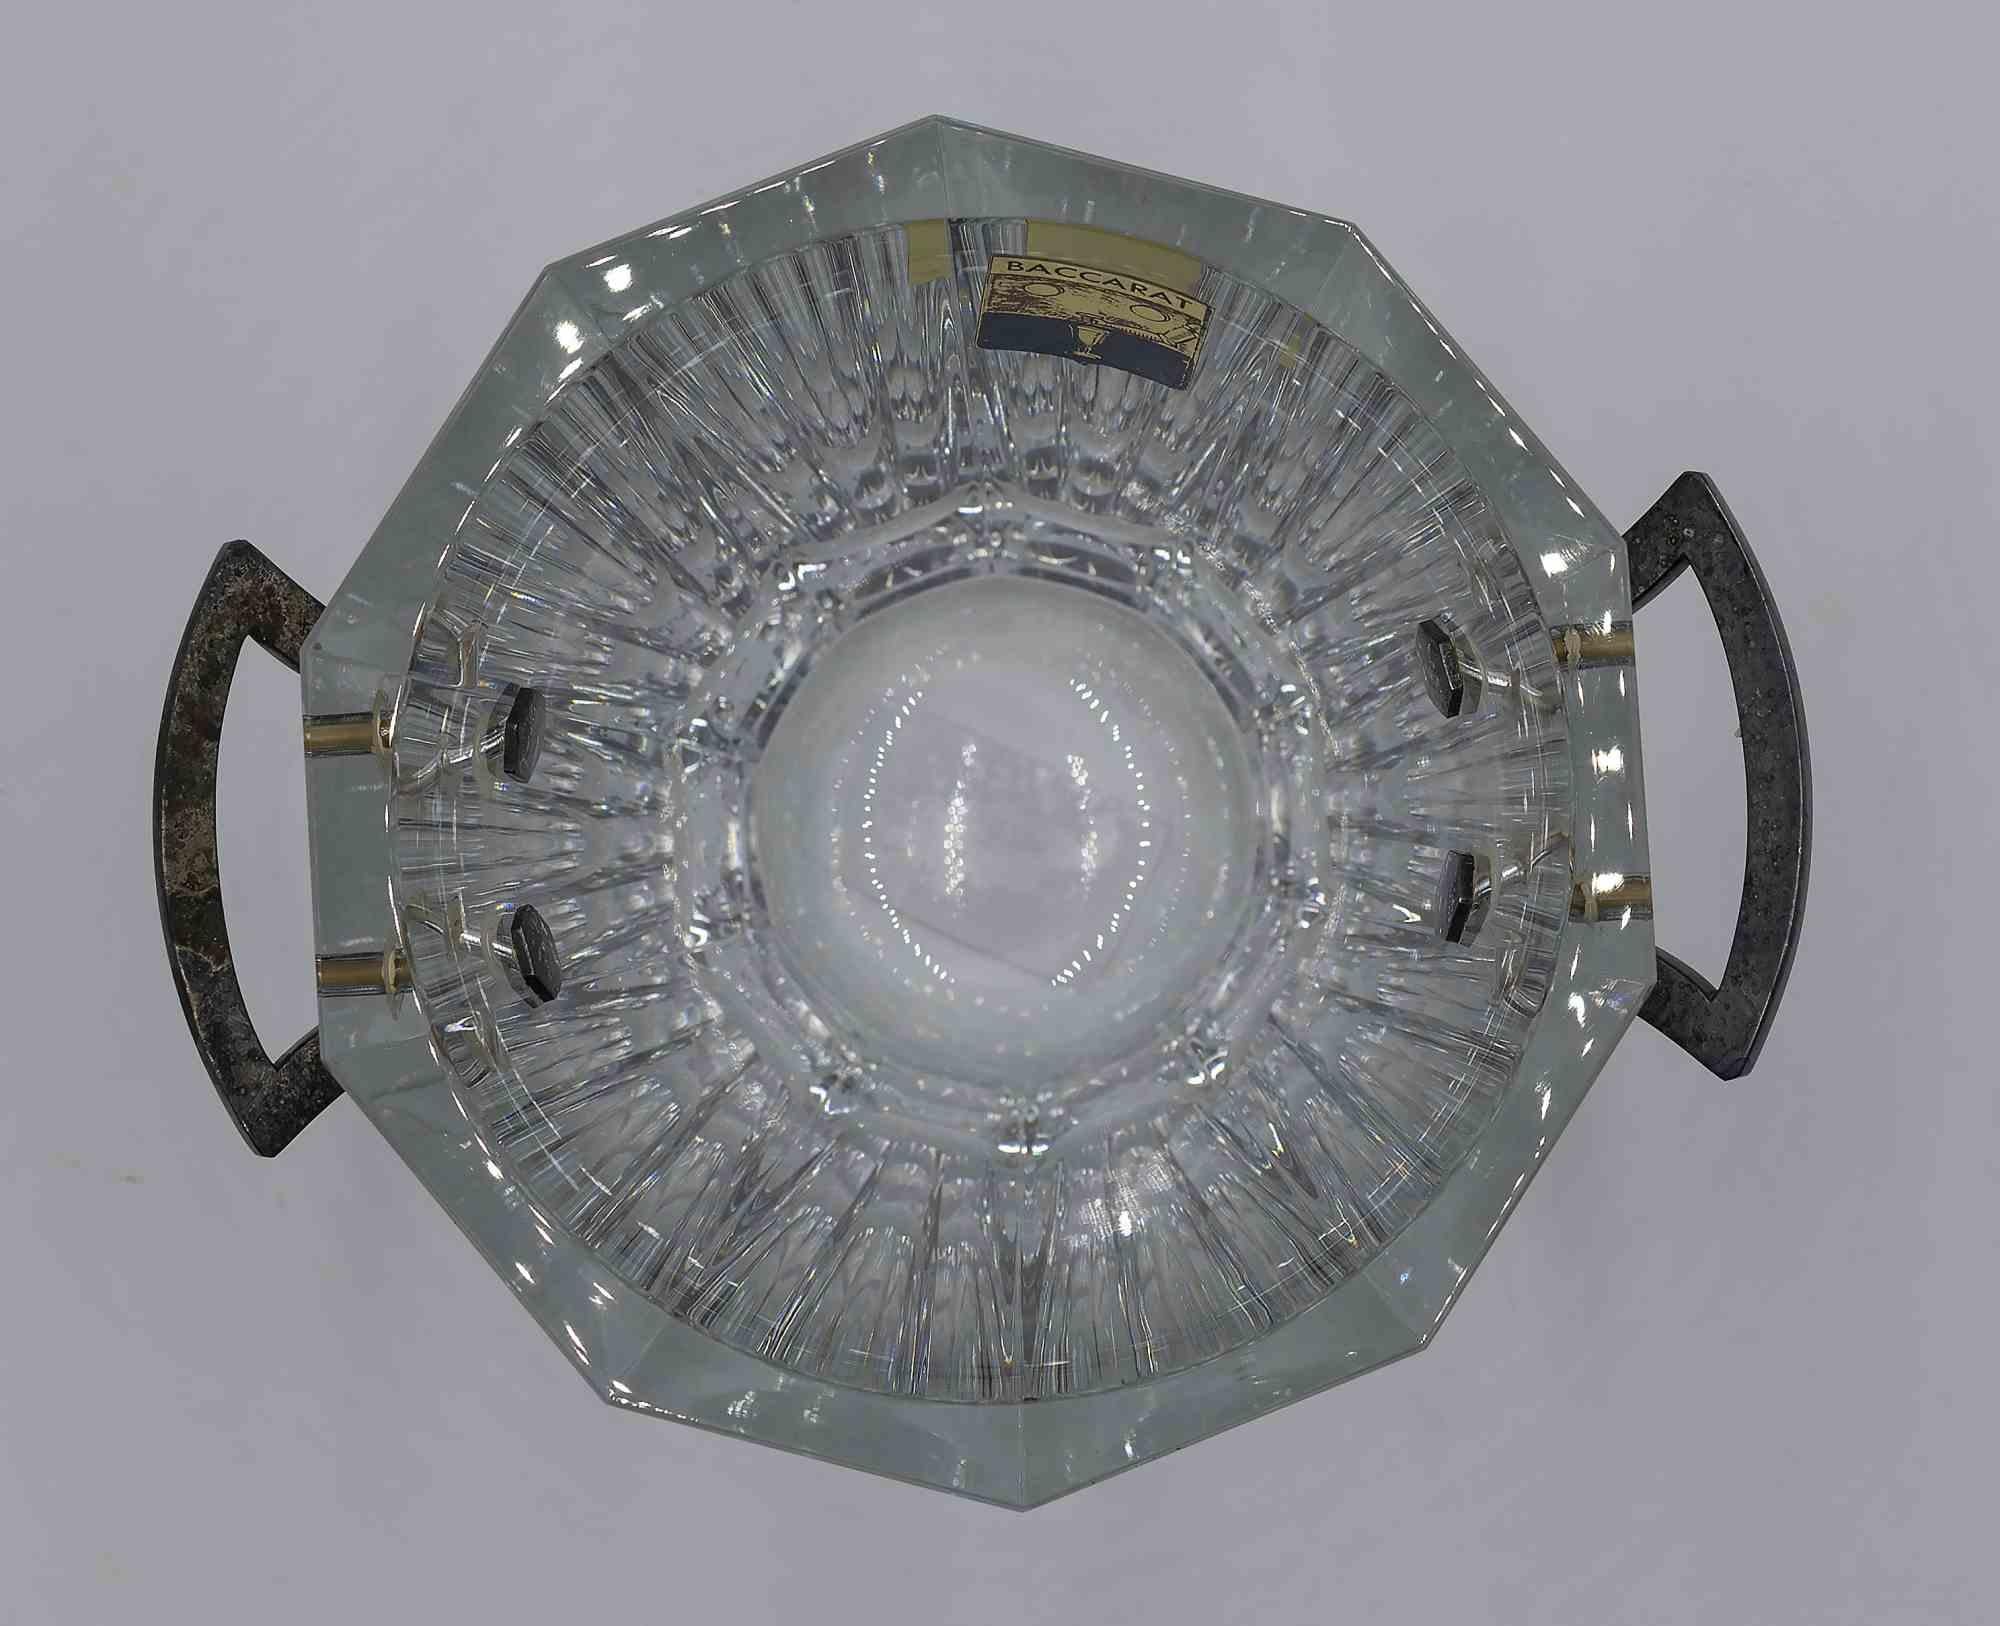 Der Baccarat Eiskübel ist ein originelles Dekorationsobjekt:: das in den 1970er Jahren von der Manufaktur Baccarat hergestellt wurde. 

Eiskübel komplett in Kristall realisiert. 

Dieses ikonische Baccarat-Objekt ist ein kultiges Element der